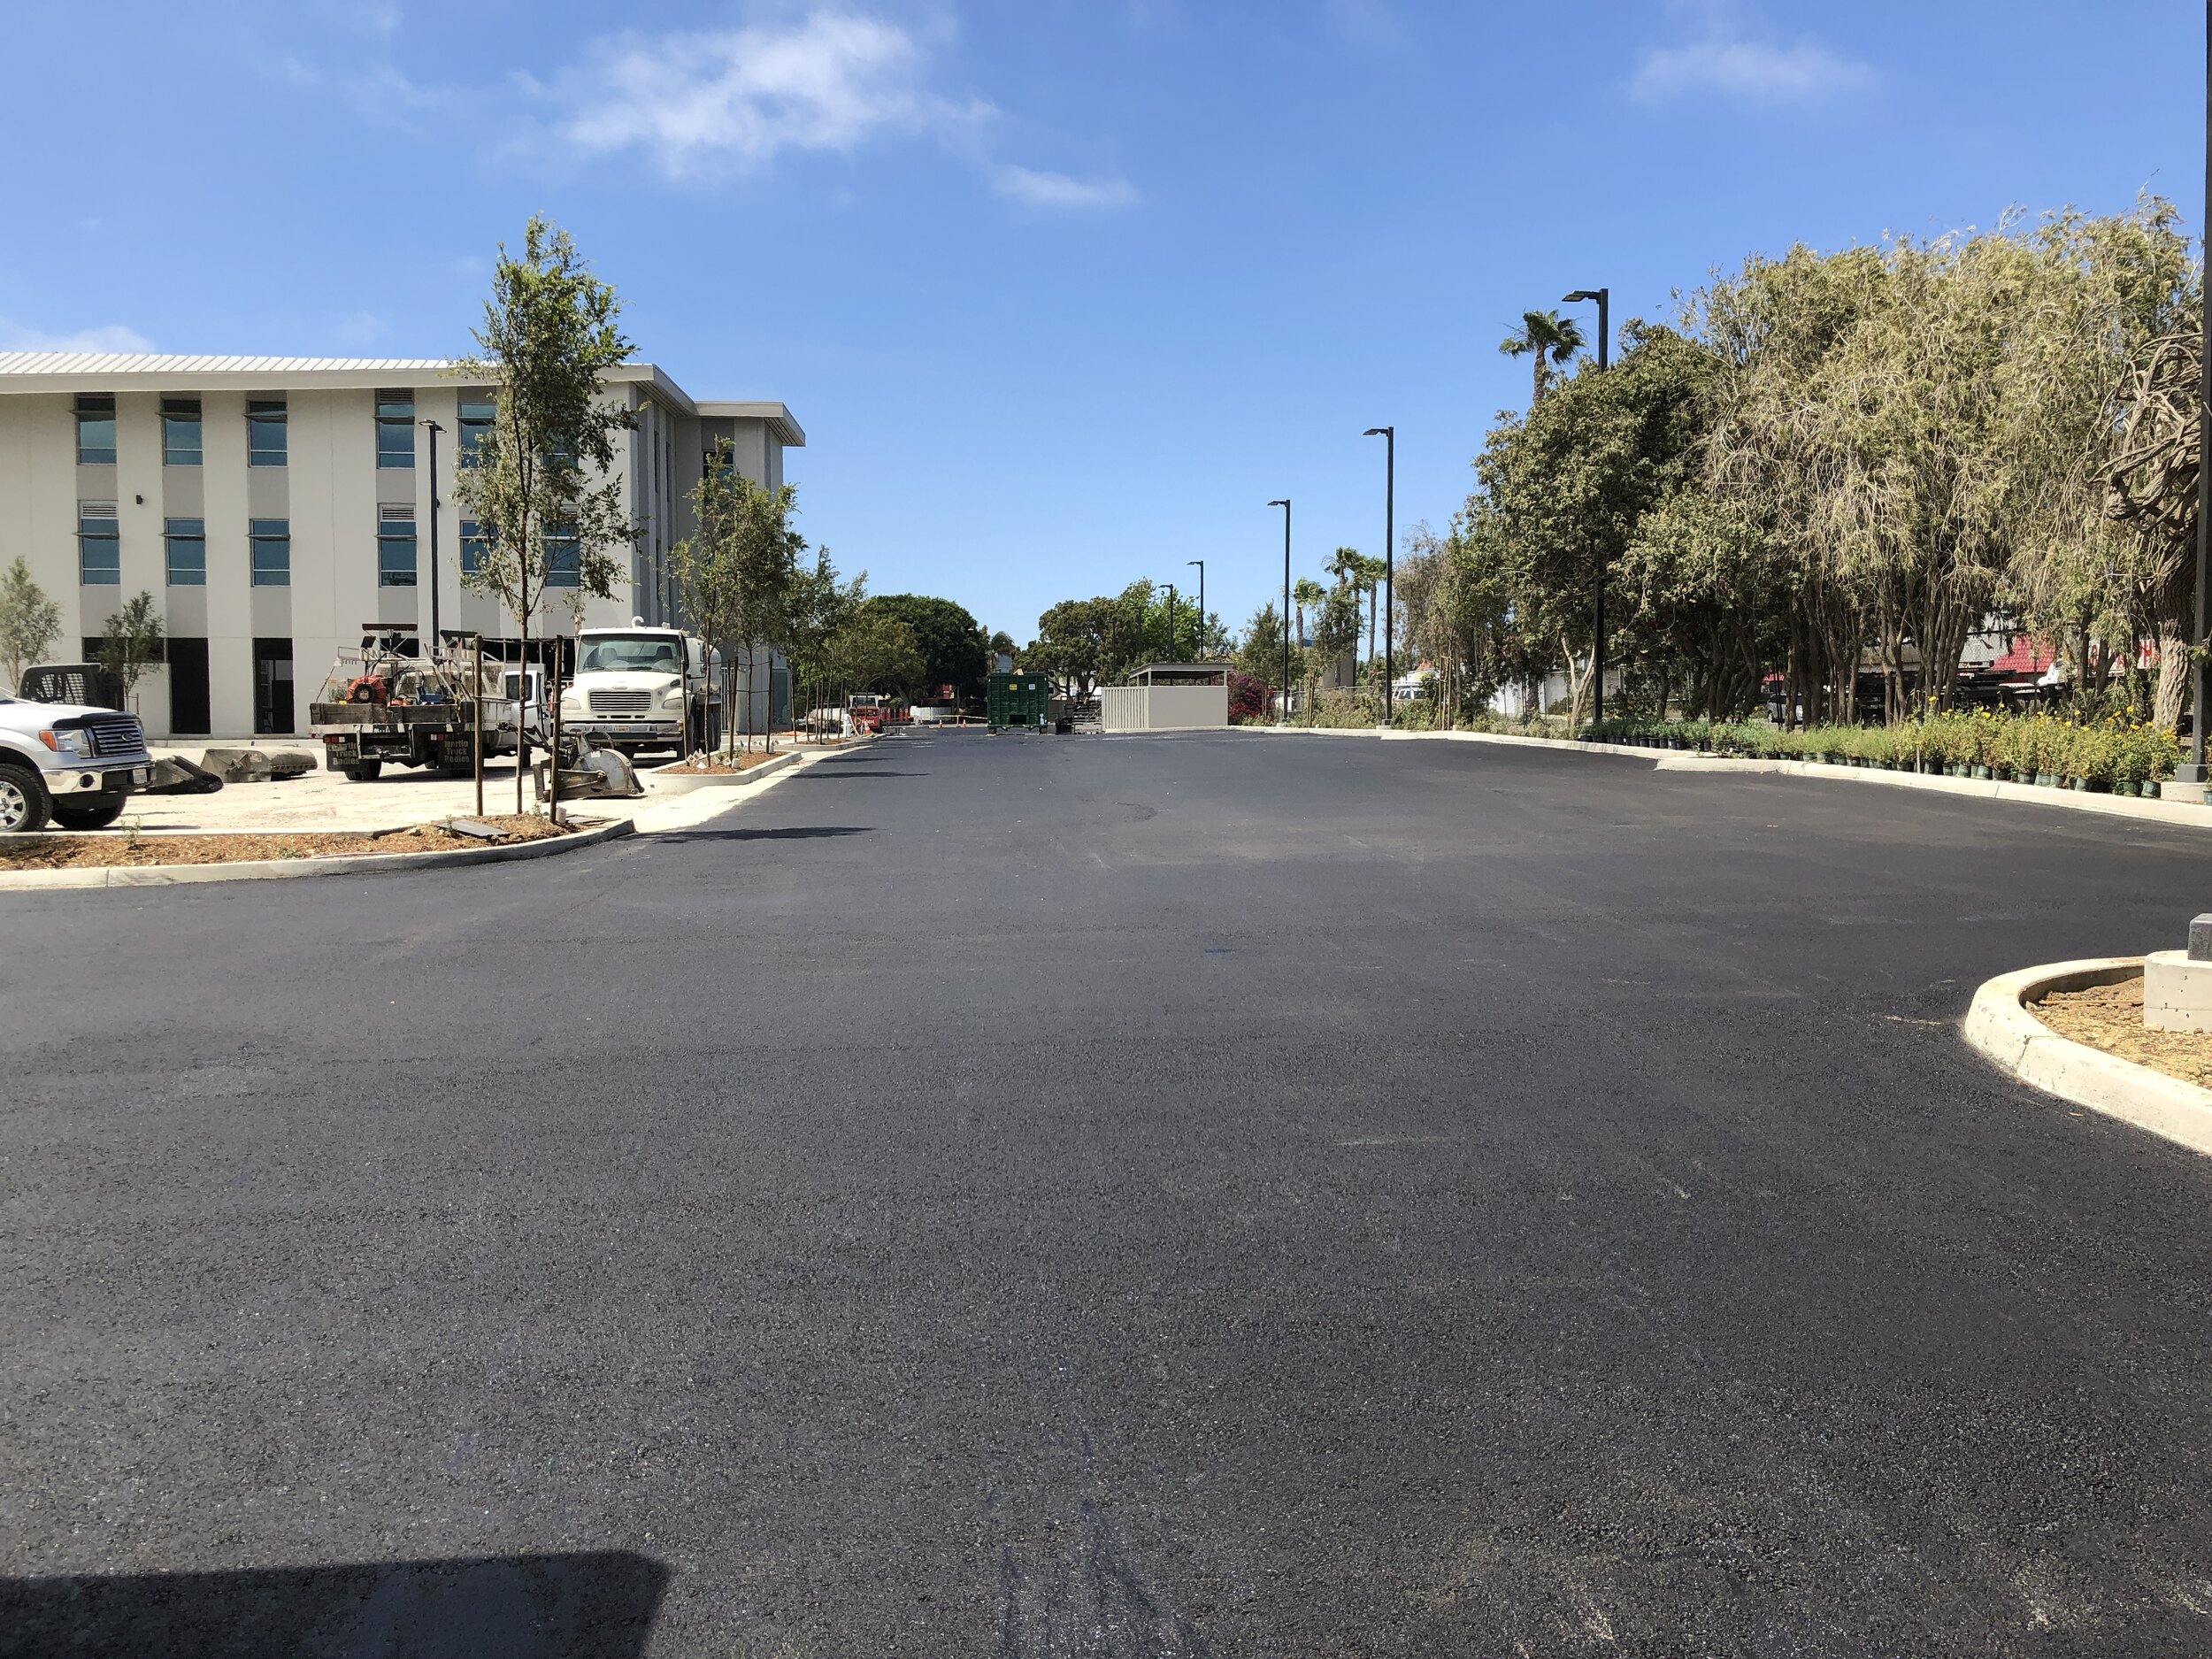  A freshly paved asphalt parking lot 